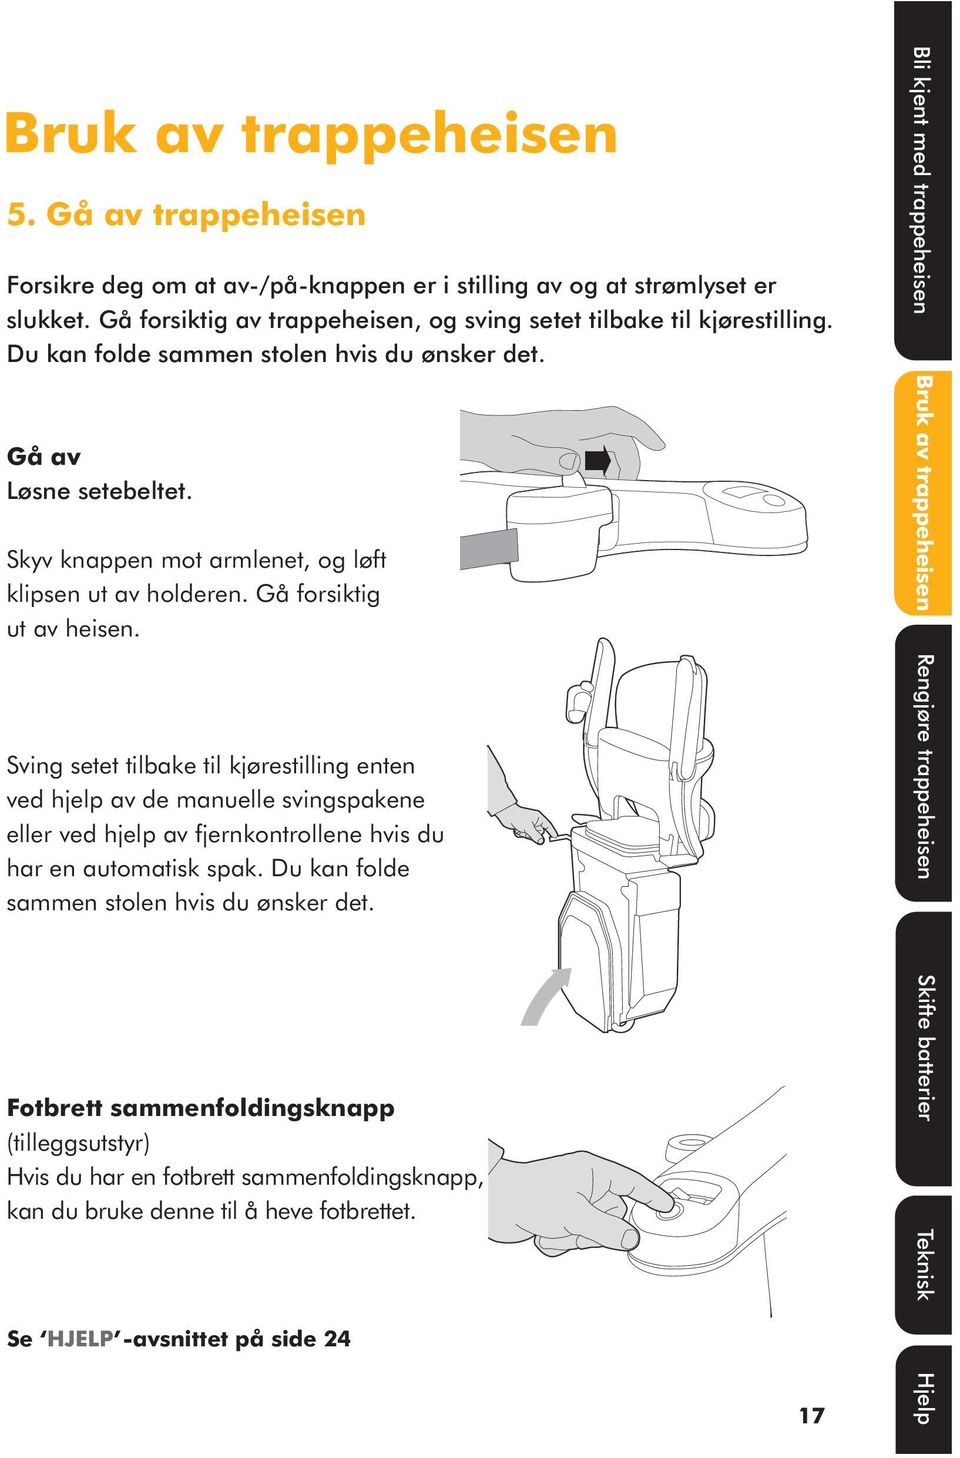 Sving setet tilbake til kjørestilling enten ved hjelp av de manuelle svingspakene eller ved hjelp av fjernkontrollene hvis du har en automatisk spak. Du kan folde sammen stolen hvis du ønsker det.